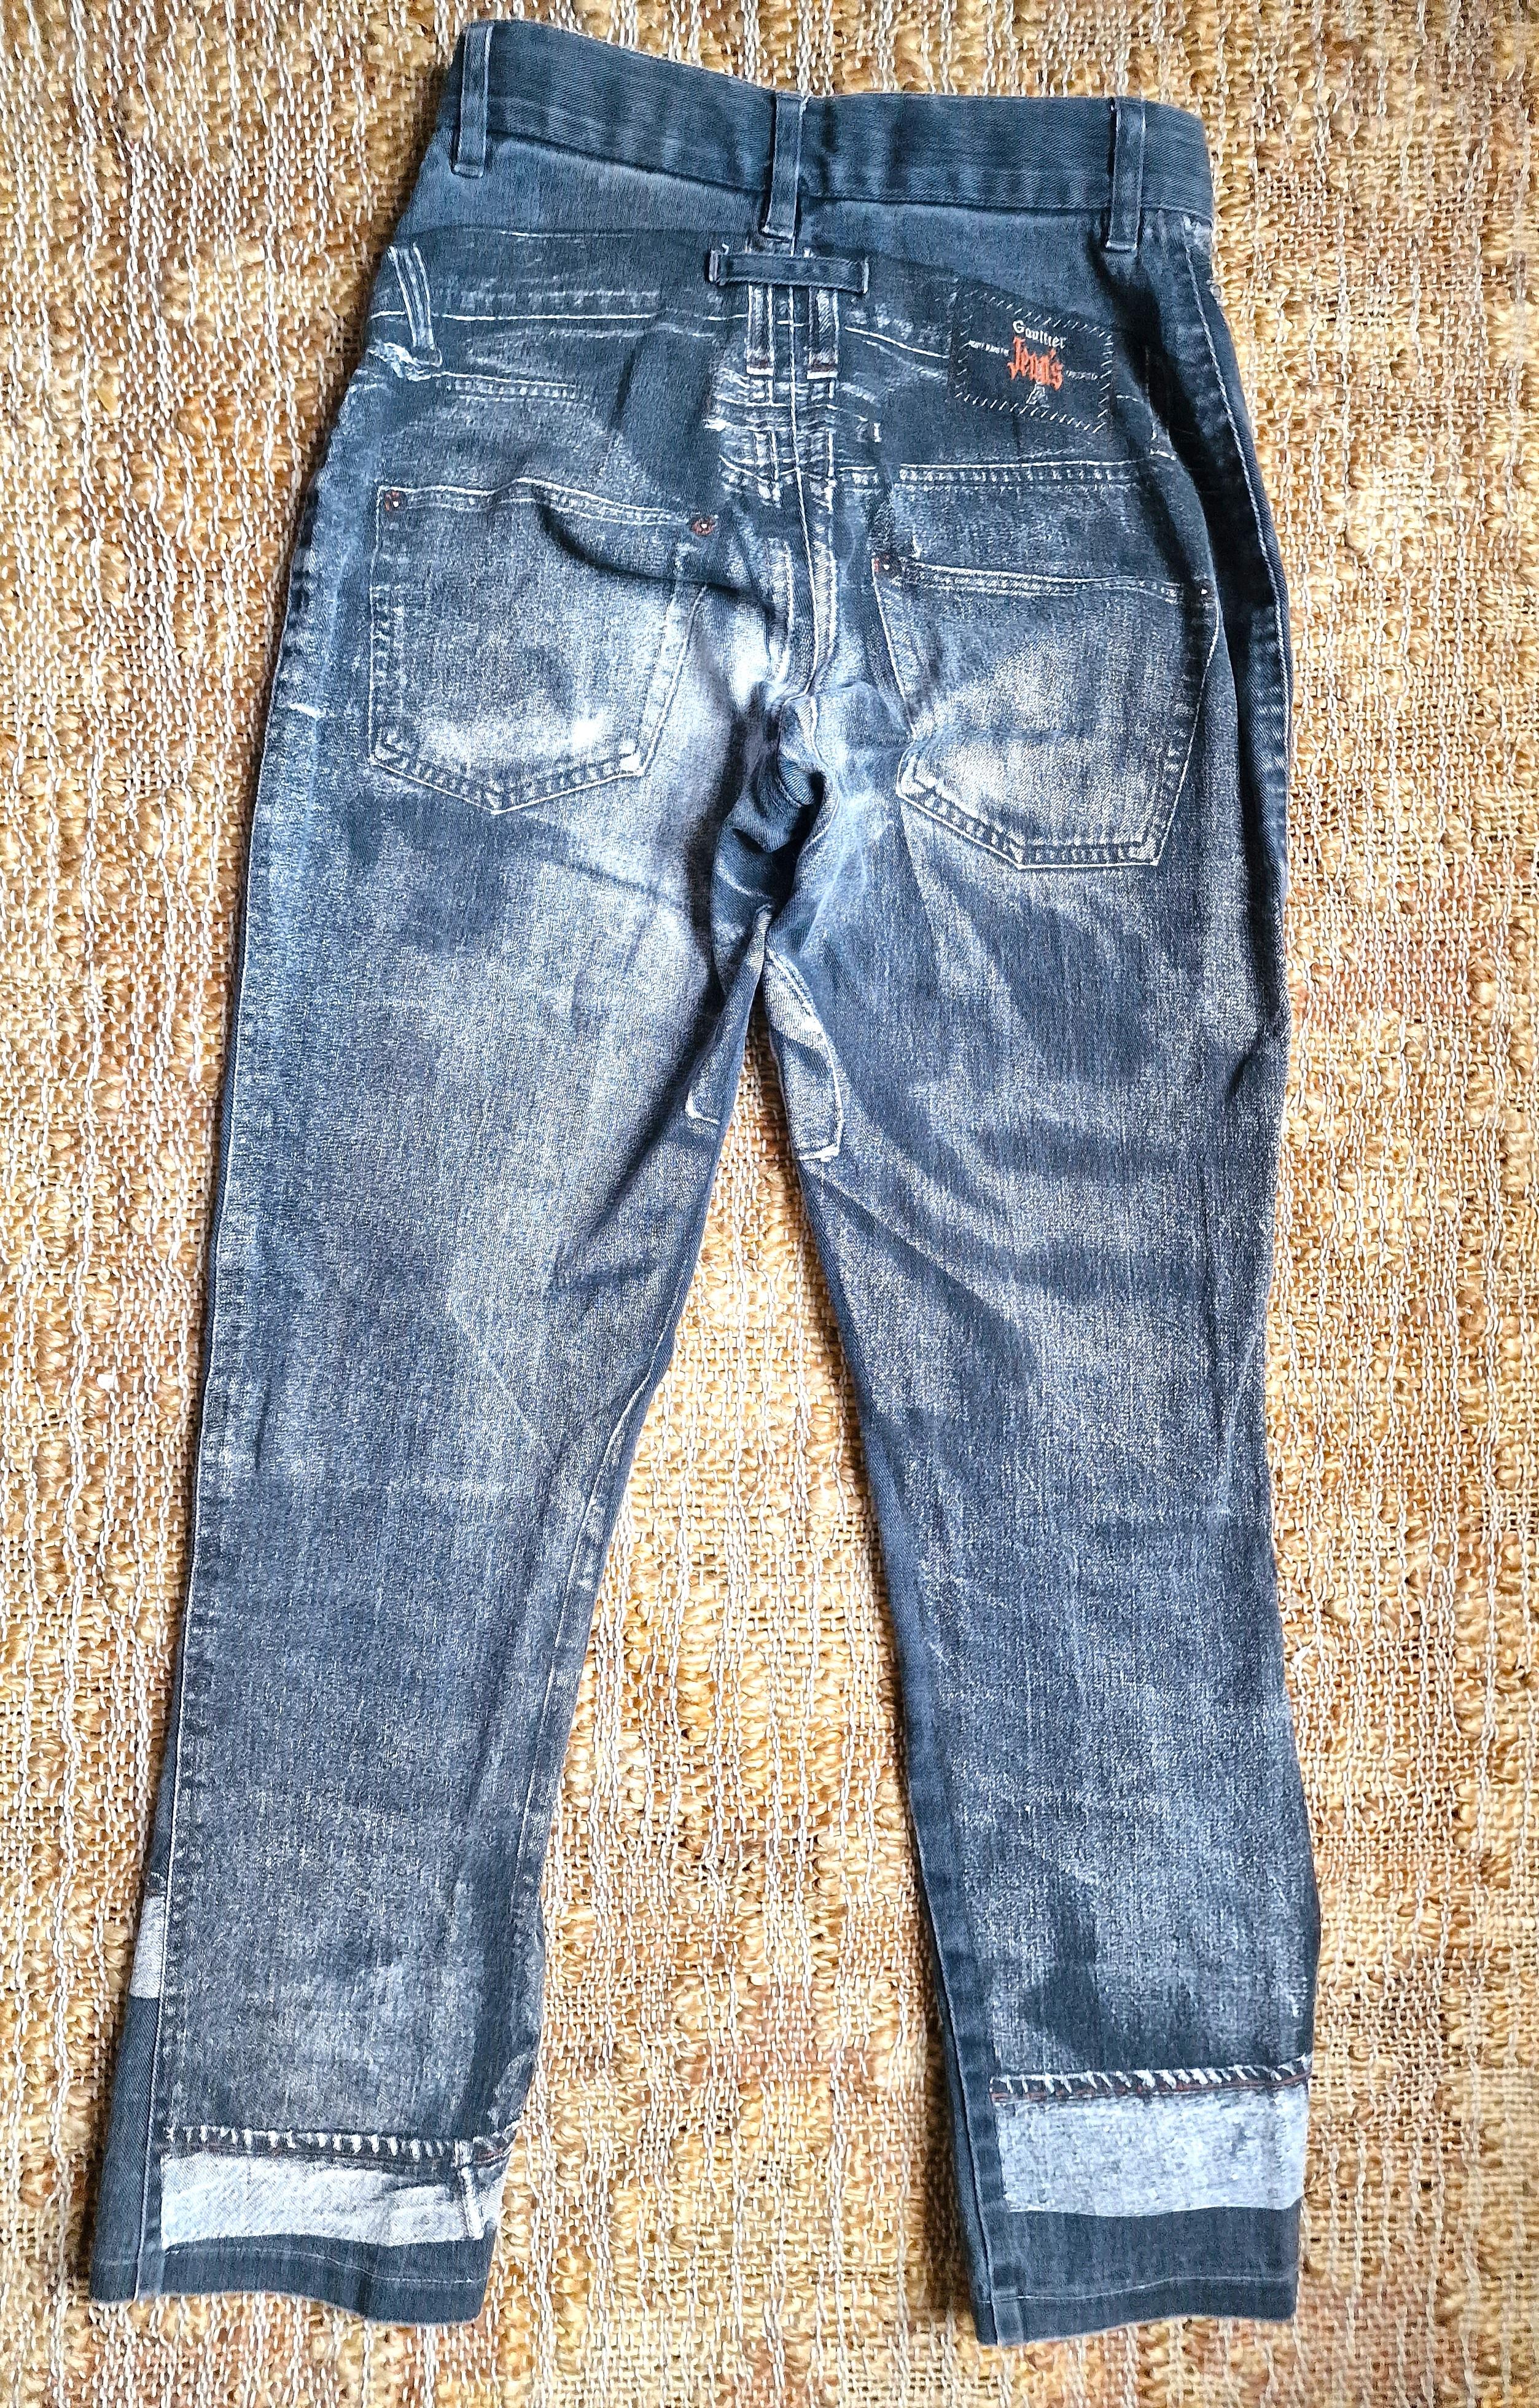 Jean Paul Gaultier Trompe L'Oeil Denim Optical Illusion Small XS Jeans Pants For Sale 7